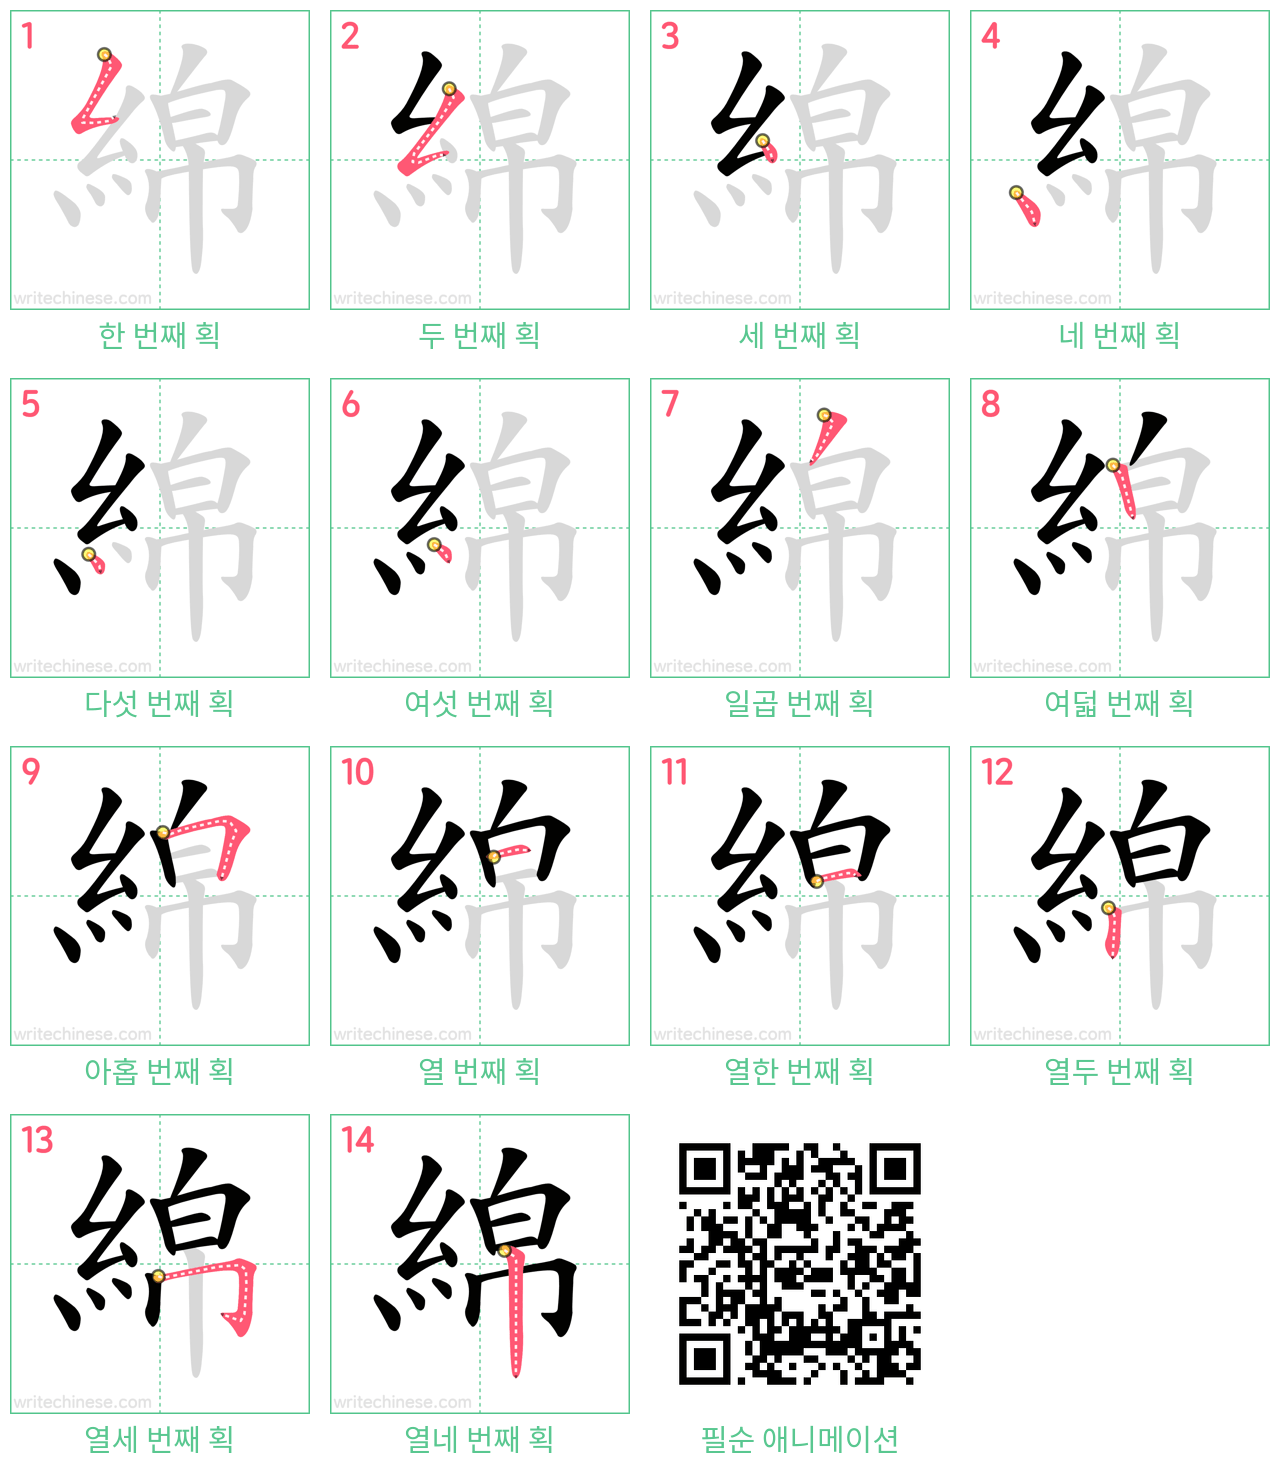 綿 step-by-step stroke order diagrams